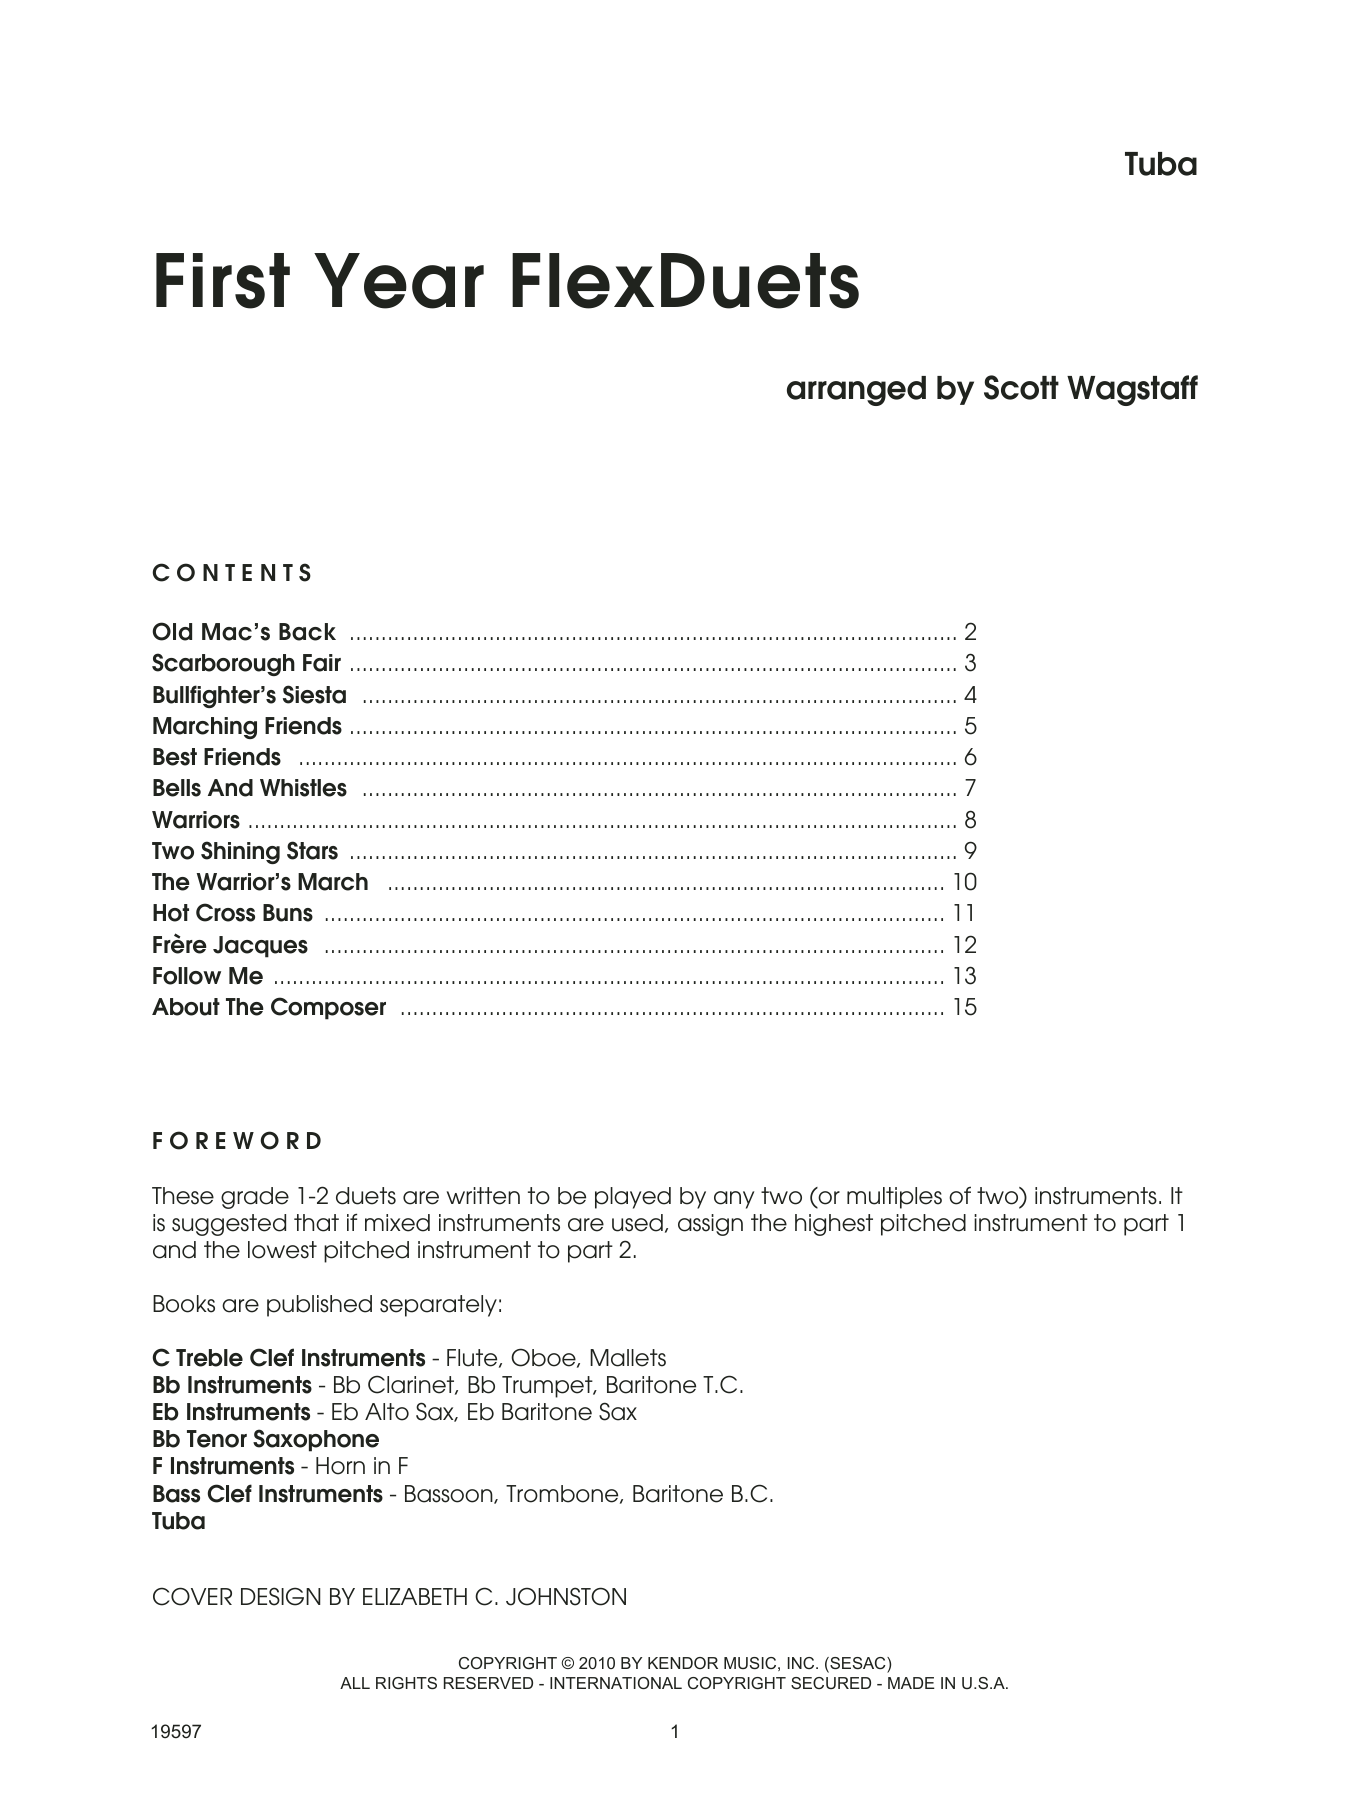 Download Scott Wagstaff First Year FlexDuets - Tuba Sheet Music